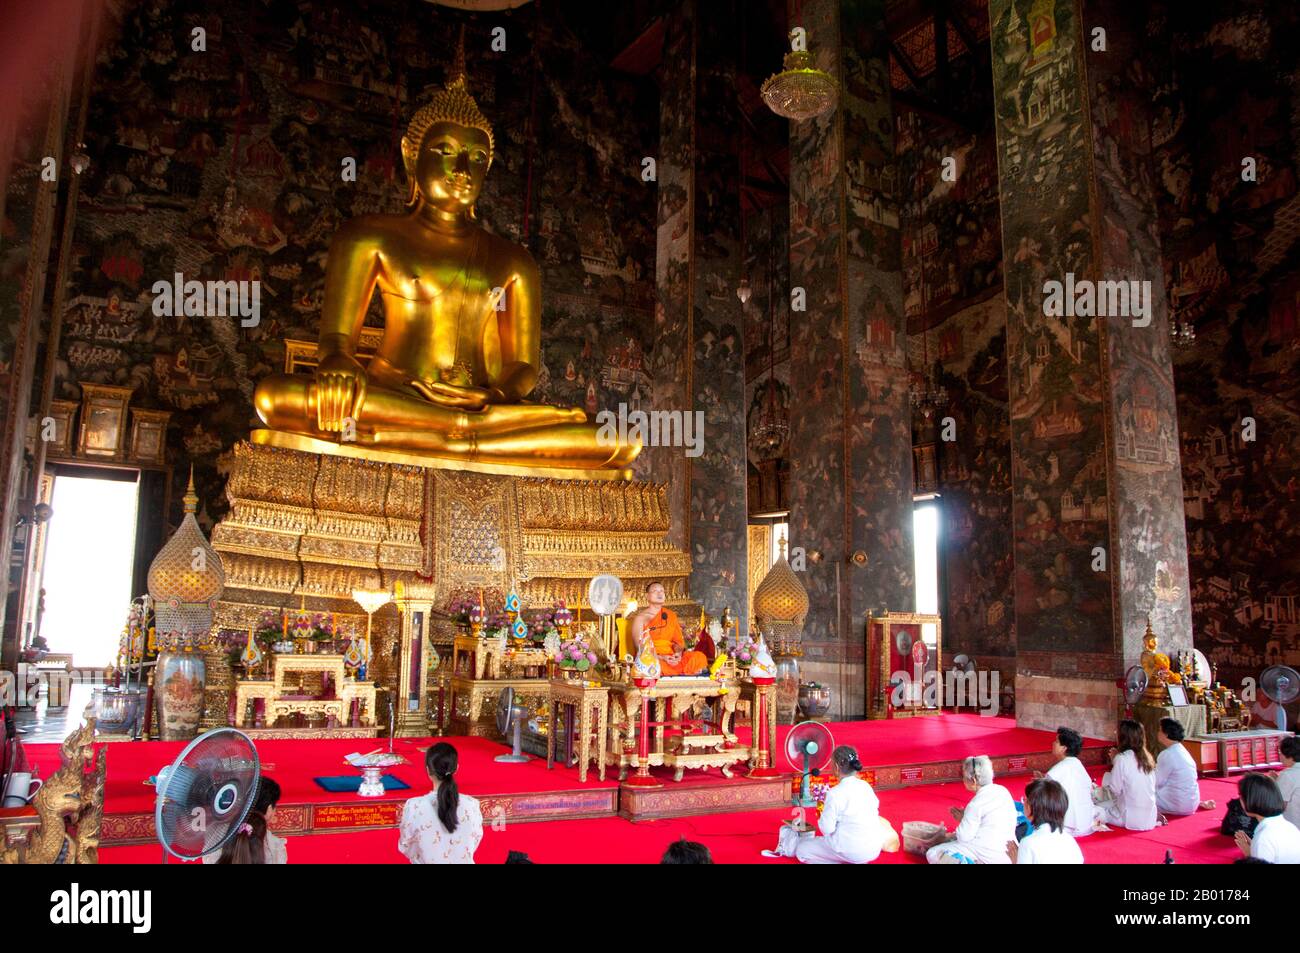 Thailandia: L'immagine del Buddha di Phra Sri Sakyamuni, Wat Suthat, Bangkok. Wat Suthat Thepphawararam è un tempio reale di prima classe, uno dei sei templi di questo tipo in Thailandia. La costruzione fu iniziata dal re Buddha Yodfa Chulaloke (Rama i) nel 1807. Ulteriori costruzioni e decorazioni furono effettuate dal re Buddha Loetla Nabhalai (Rama II) che aiutò a carve le porte di legno, ma il tempio non fu completato fino al regno del re Jessadabodindra (Rama III) nel 1847. Il tempio è un bell'esempio di stile architettonico Rattanakosin. Foto Stock